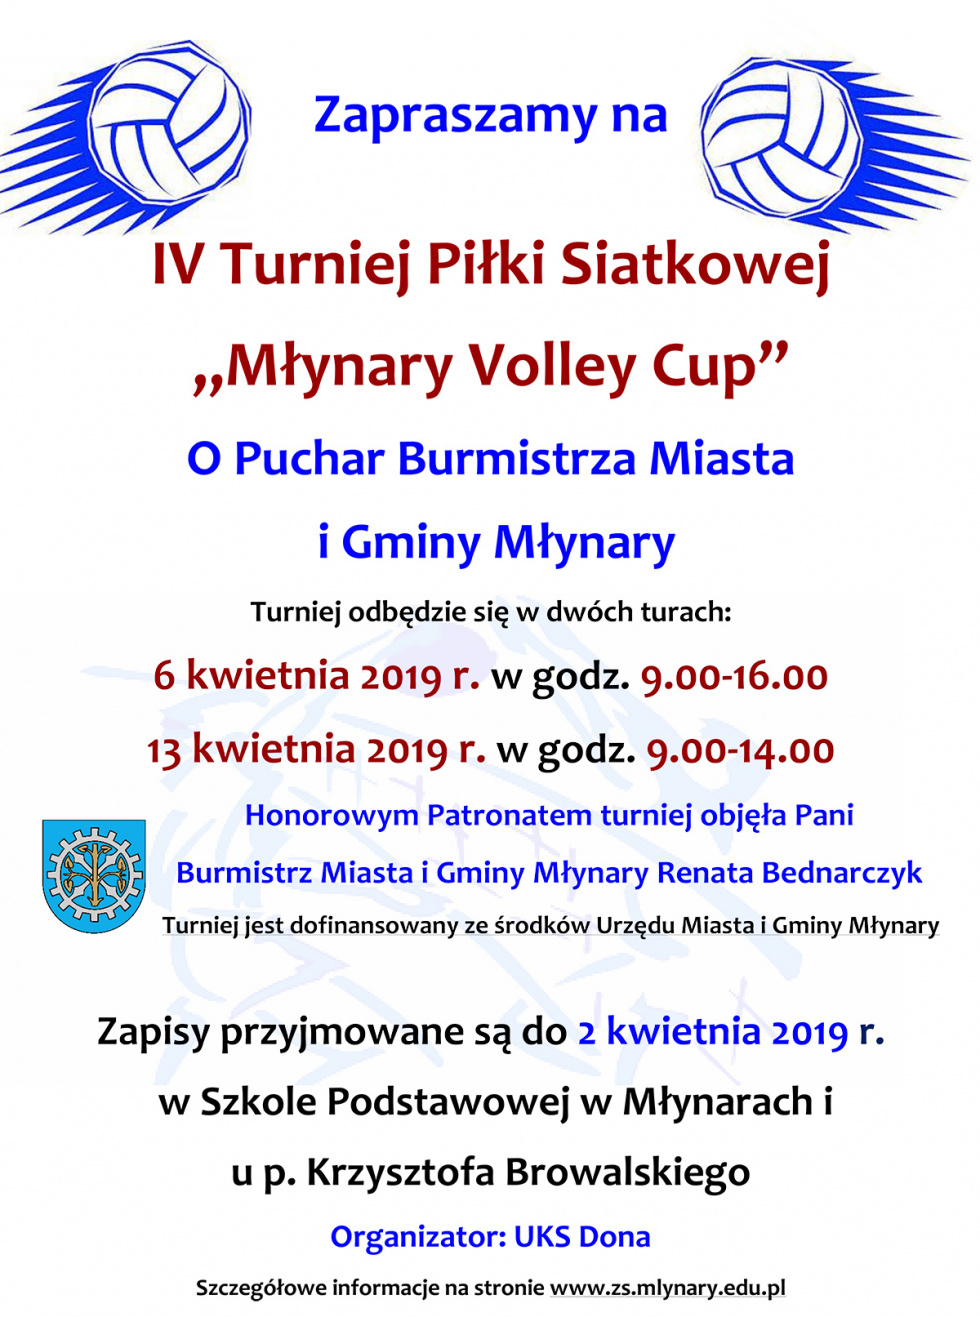 IV edycja Turnieju "Młynary Volley Cup"